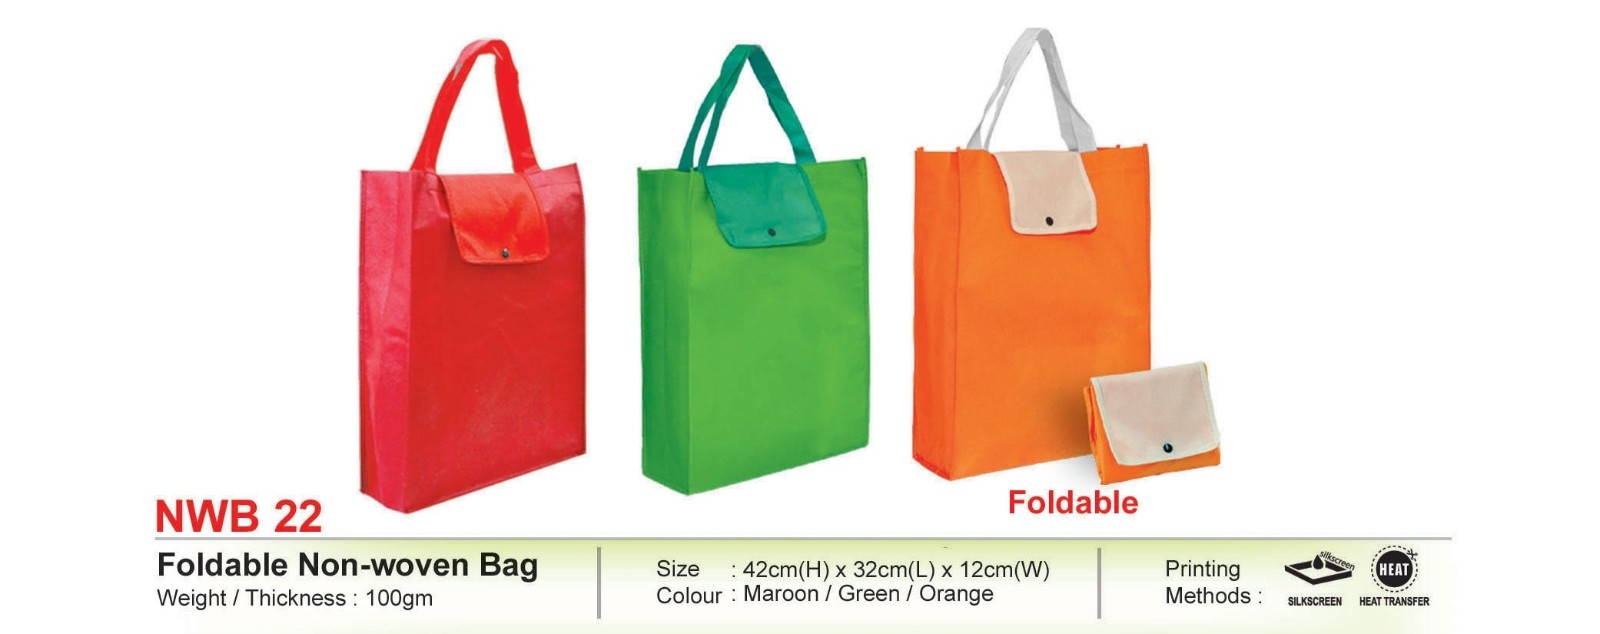 NWB 22 Foldable Non-woven Bag (i)